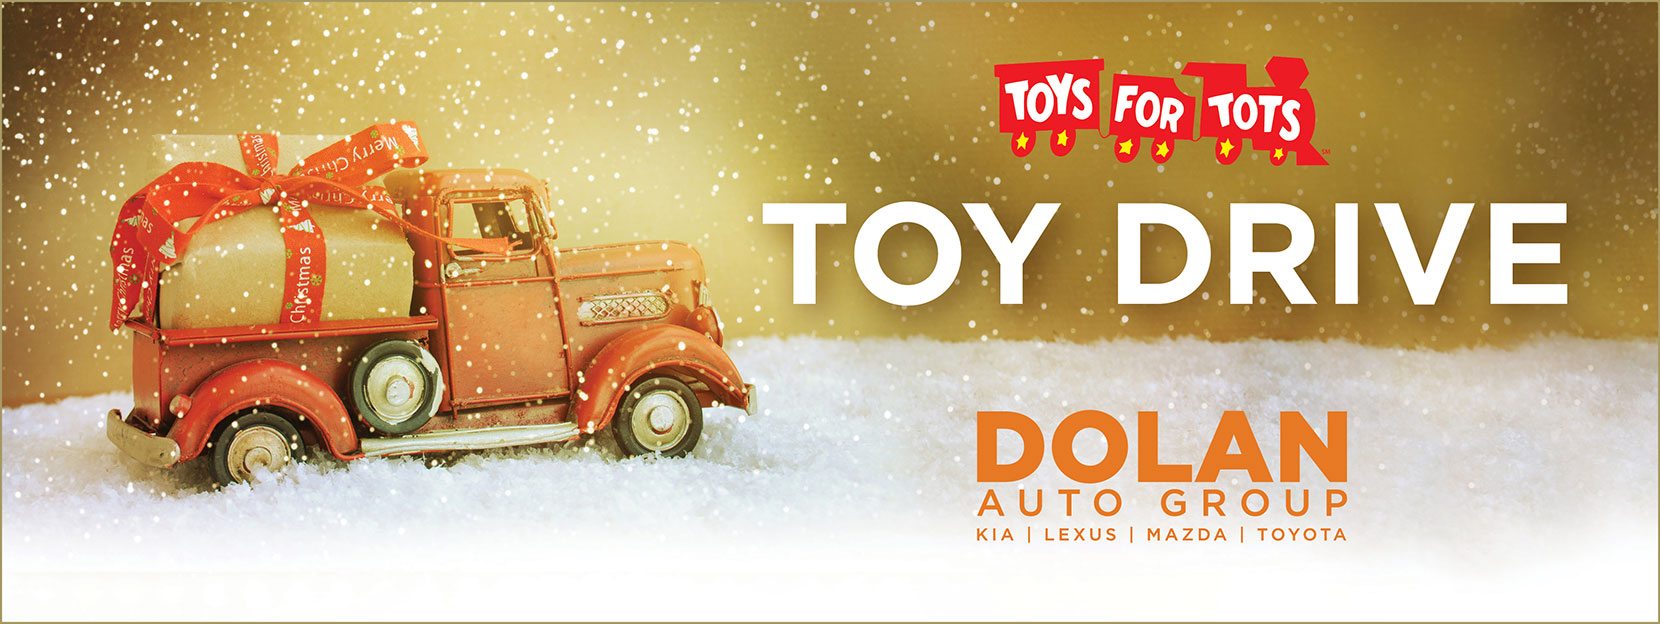 DAG-1987-Toys-for-Tots-Social-Images-Nov-17-830×312